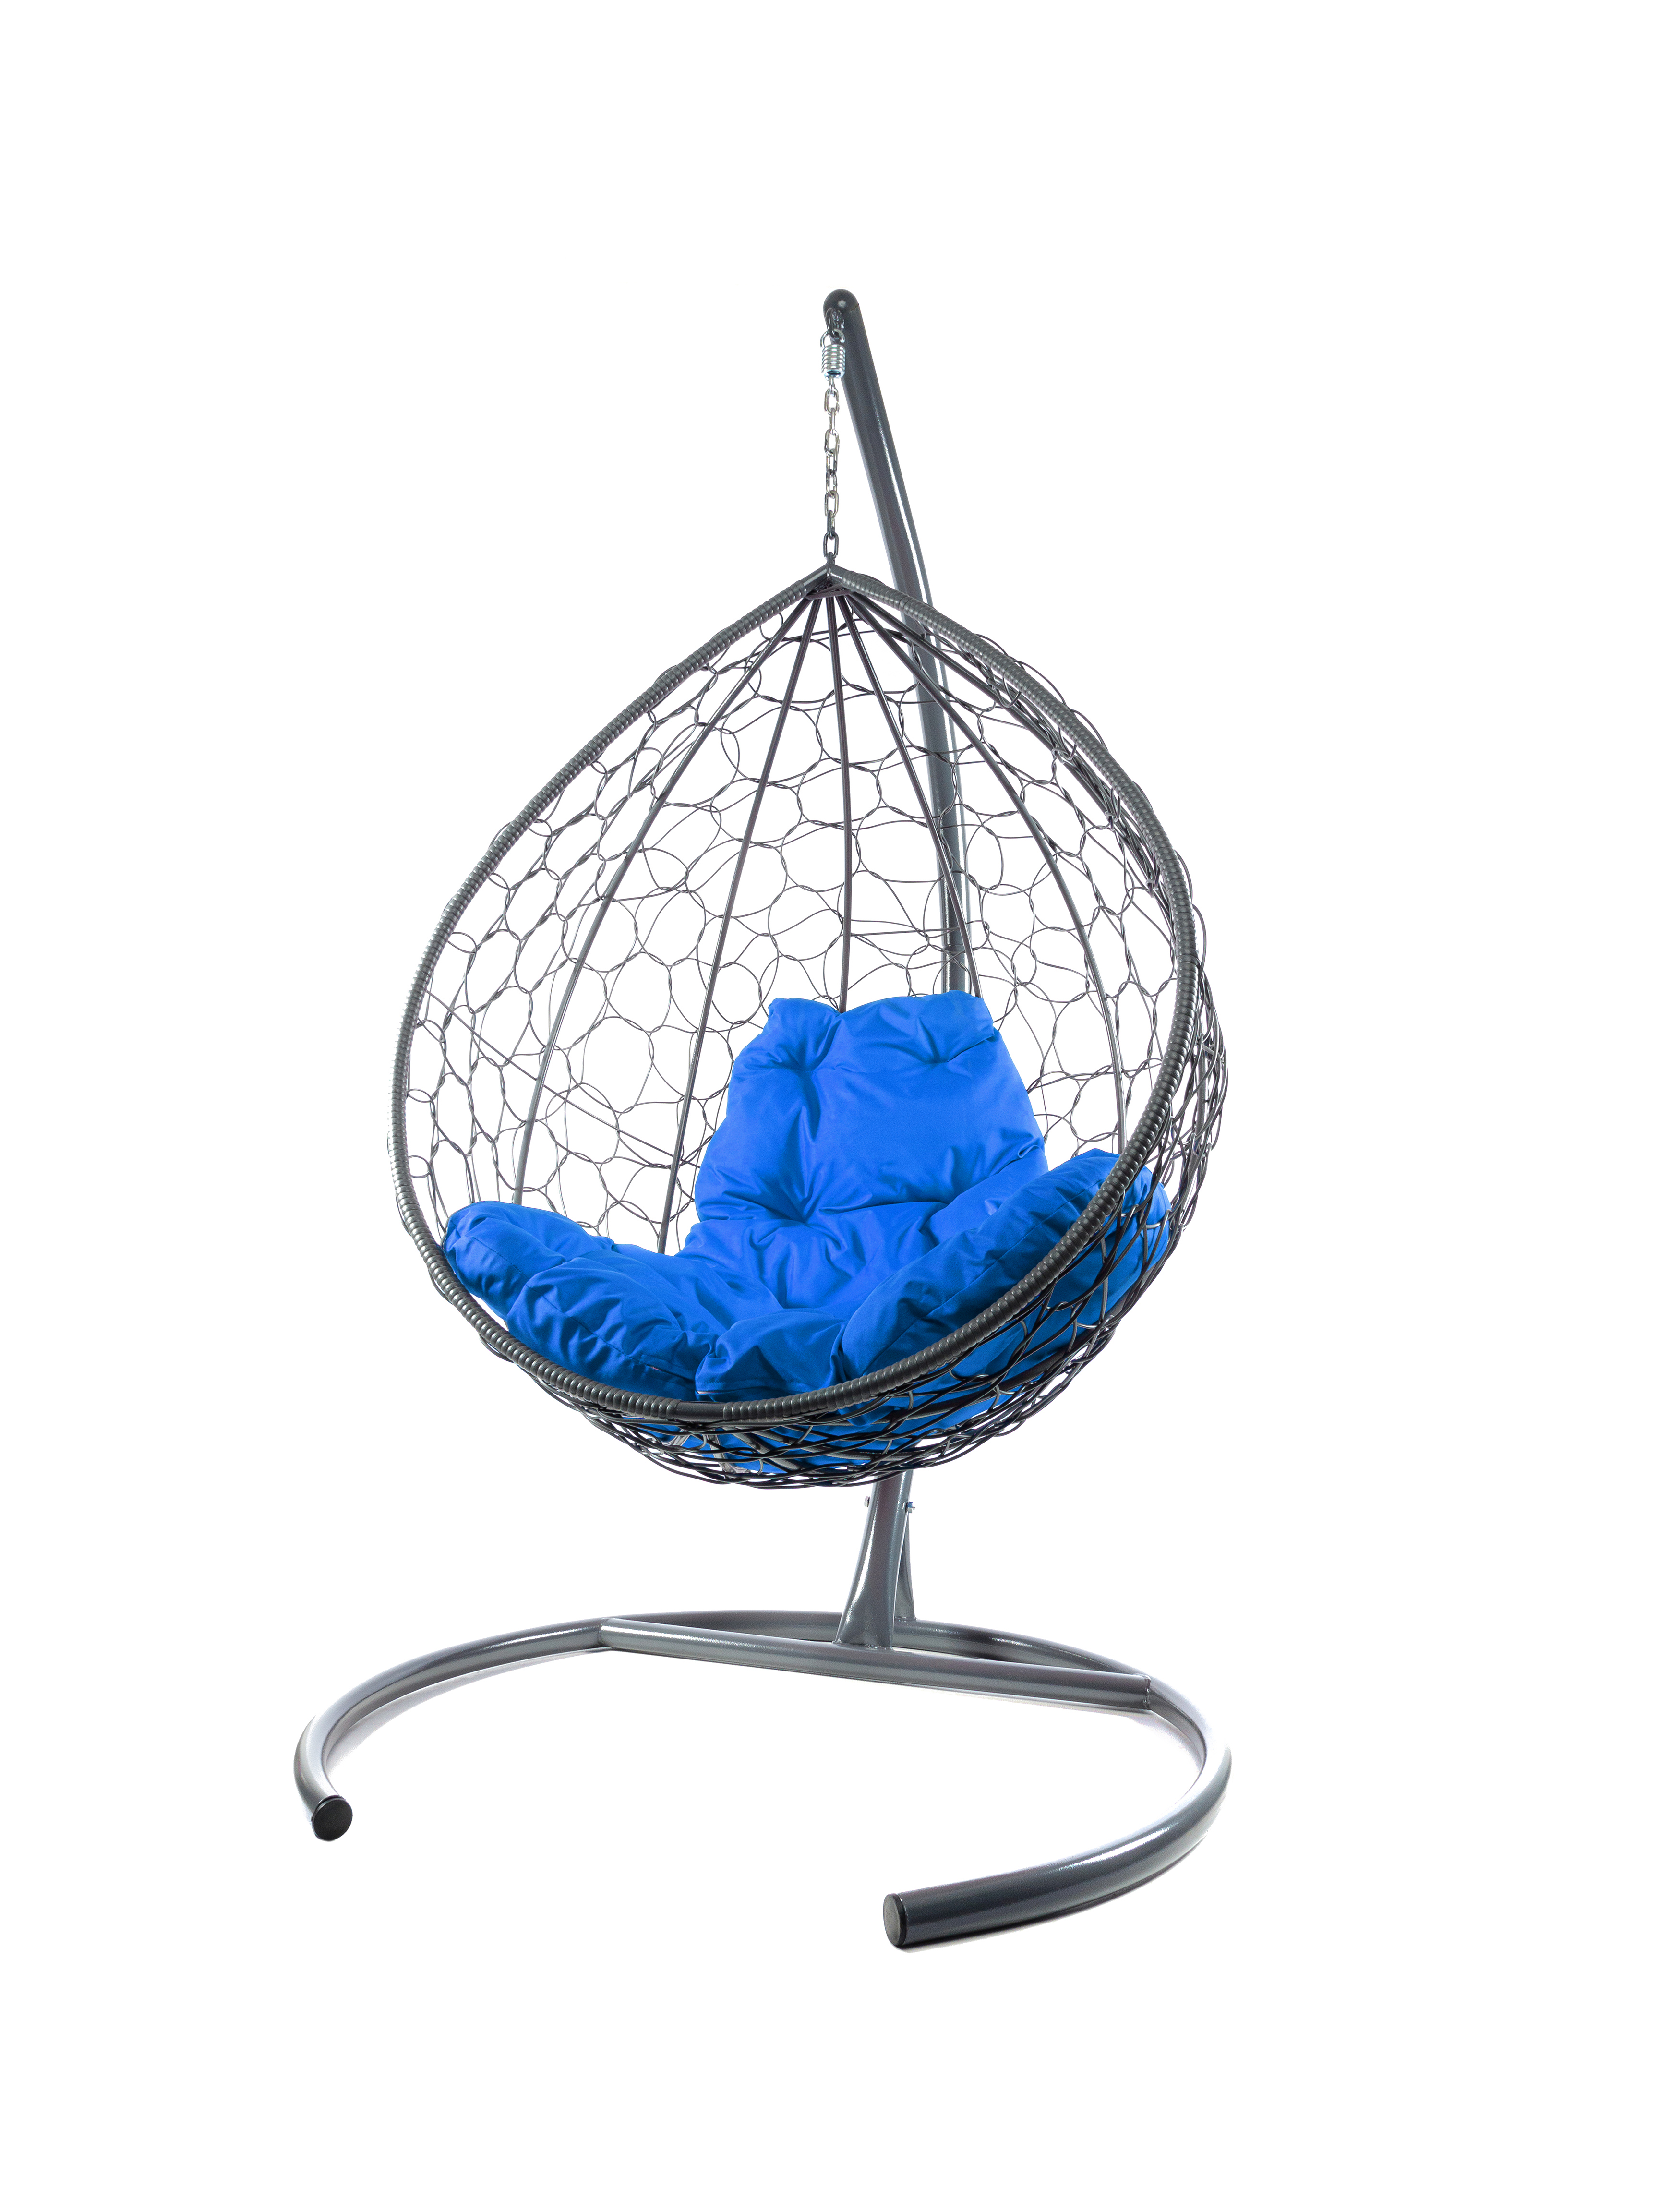 фото Подвесное кресло серый m-group капля ротанг 11020310 синяя подушка